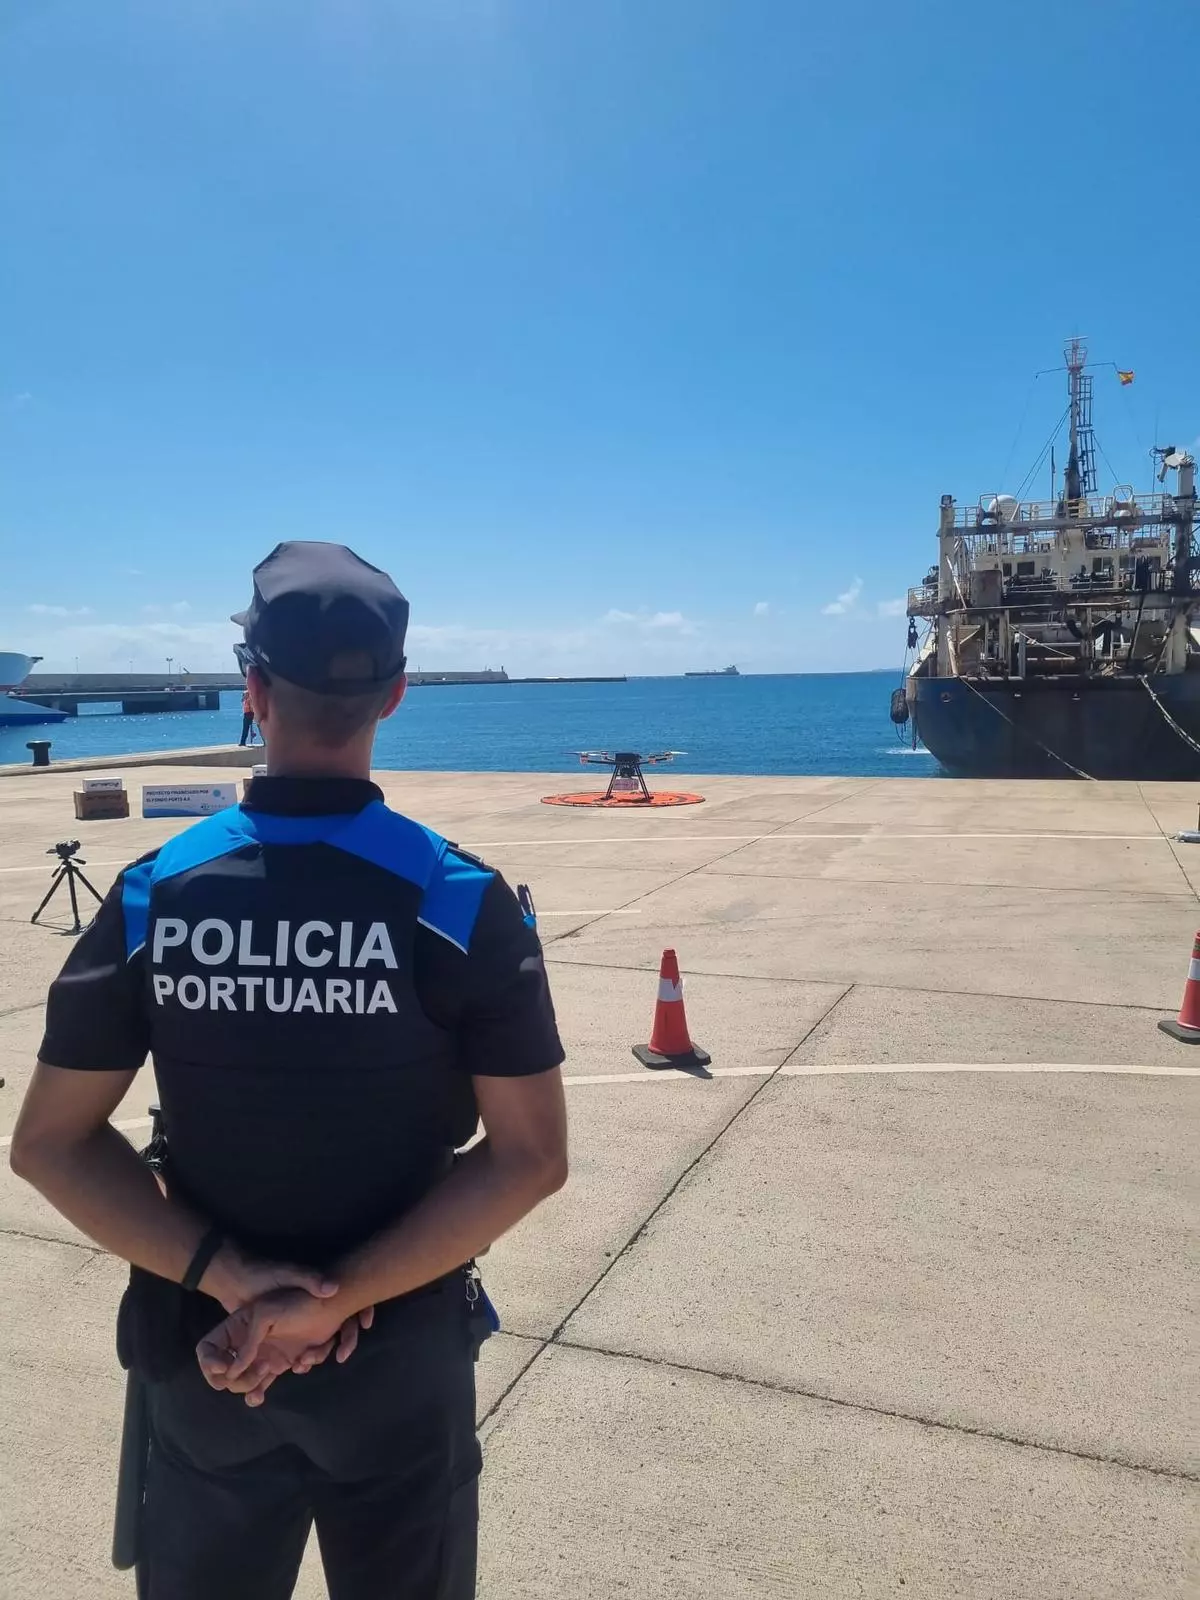 Los drones llegan al Puerto de Las Palmas con la unidad 'Charrán'